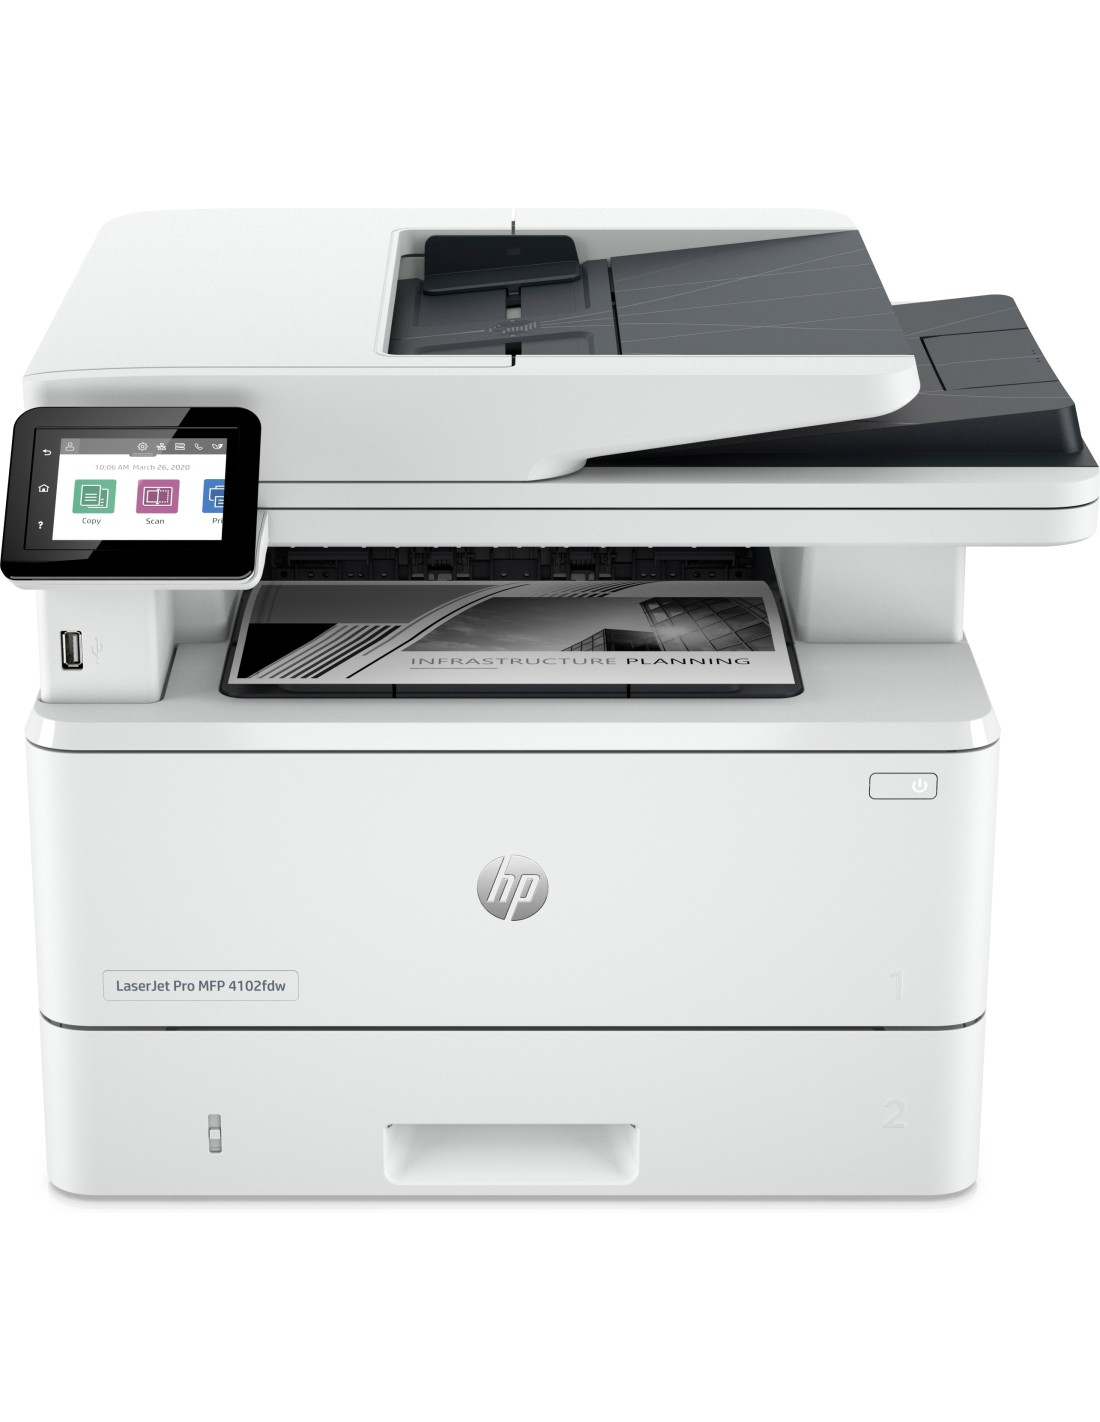 HP LaserJet Pro Stampante multifunzione 4102fdw, Bianco e nero, Stampante  per Piccole e medie imprese, Stampa, copia